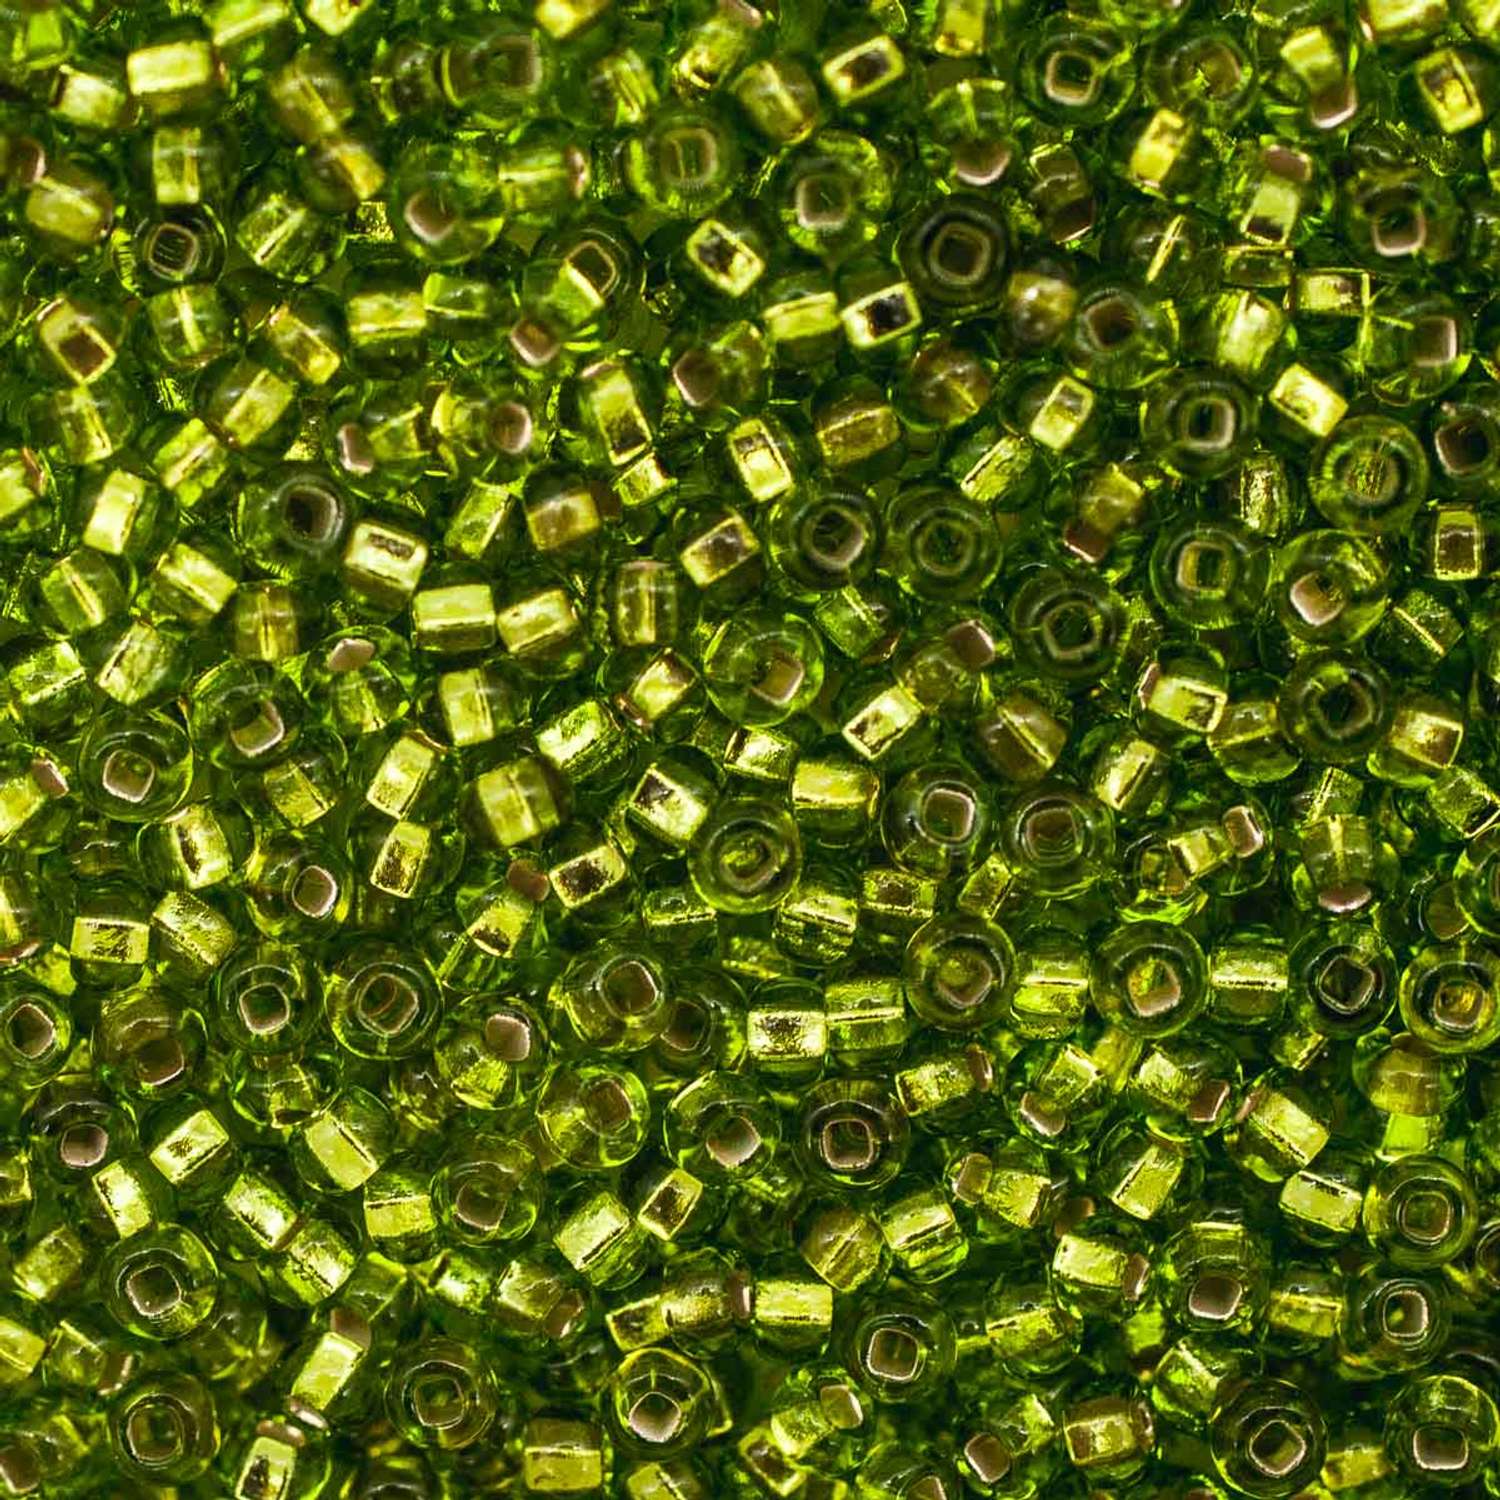 Бисер Preciosa чешский полупрозрачный жемчужный цветной центр 10/0 50 г Прециоза 57220 зеленый - фото 2